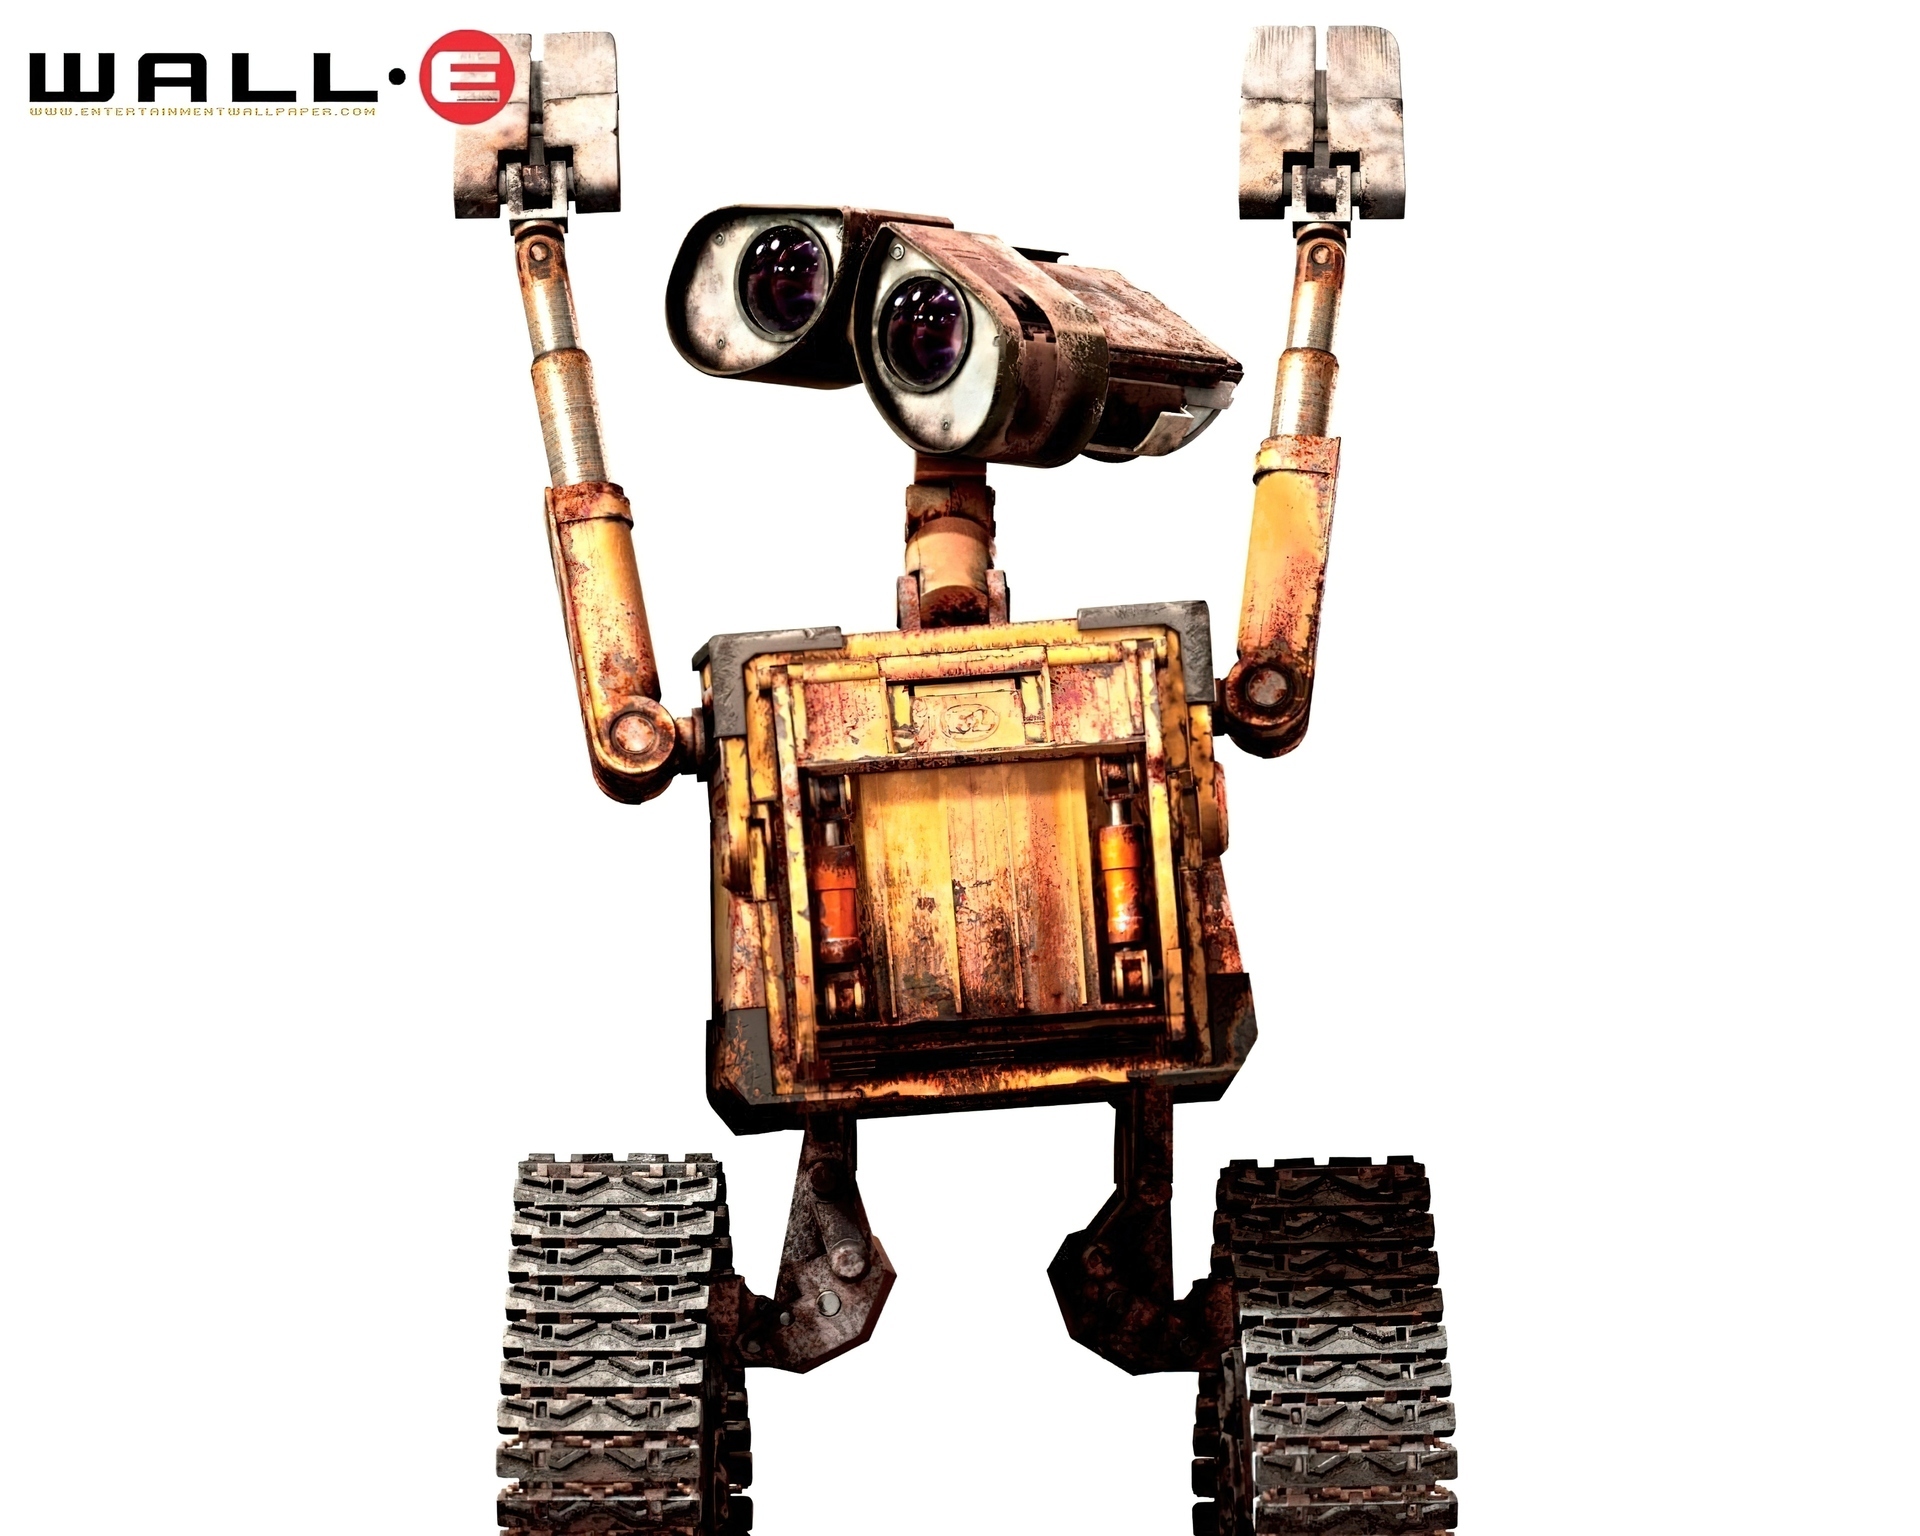 Wall E, Robot